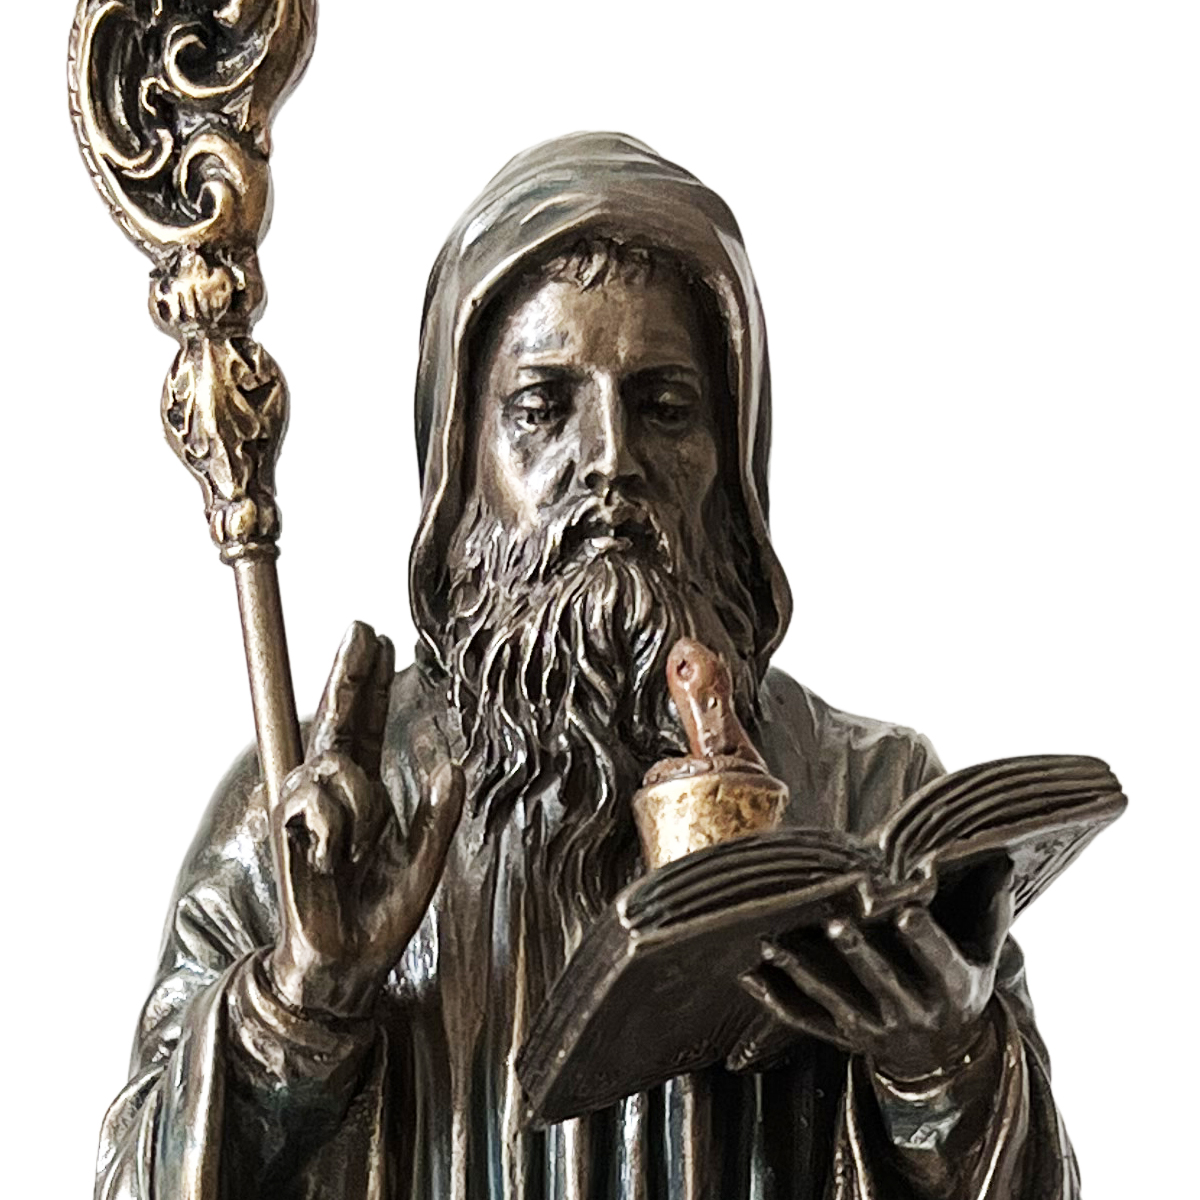 Statuette Saint Benot de couleur bronze